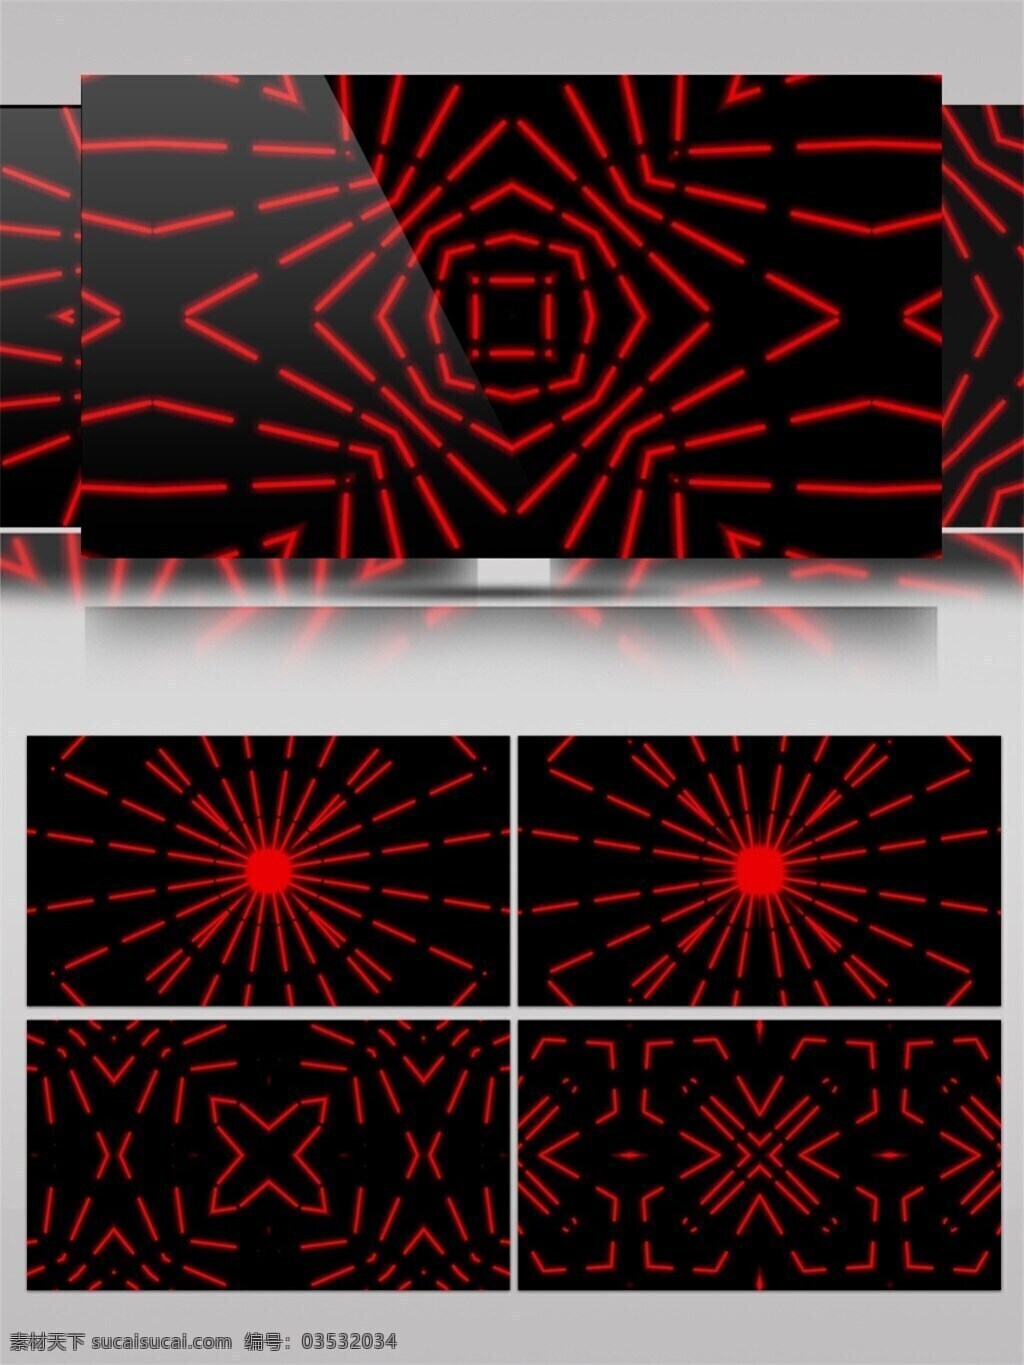 红色 发散 光束 视频 激光 炫酷视频素材 宇宙 转场背景